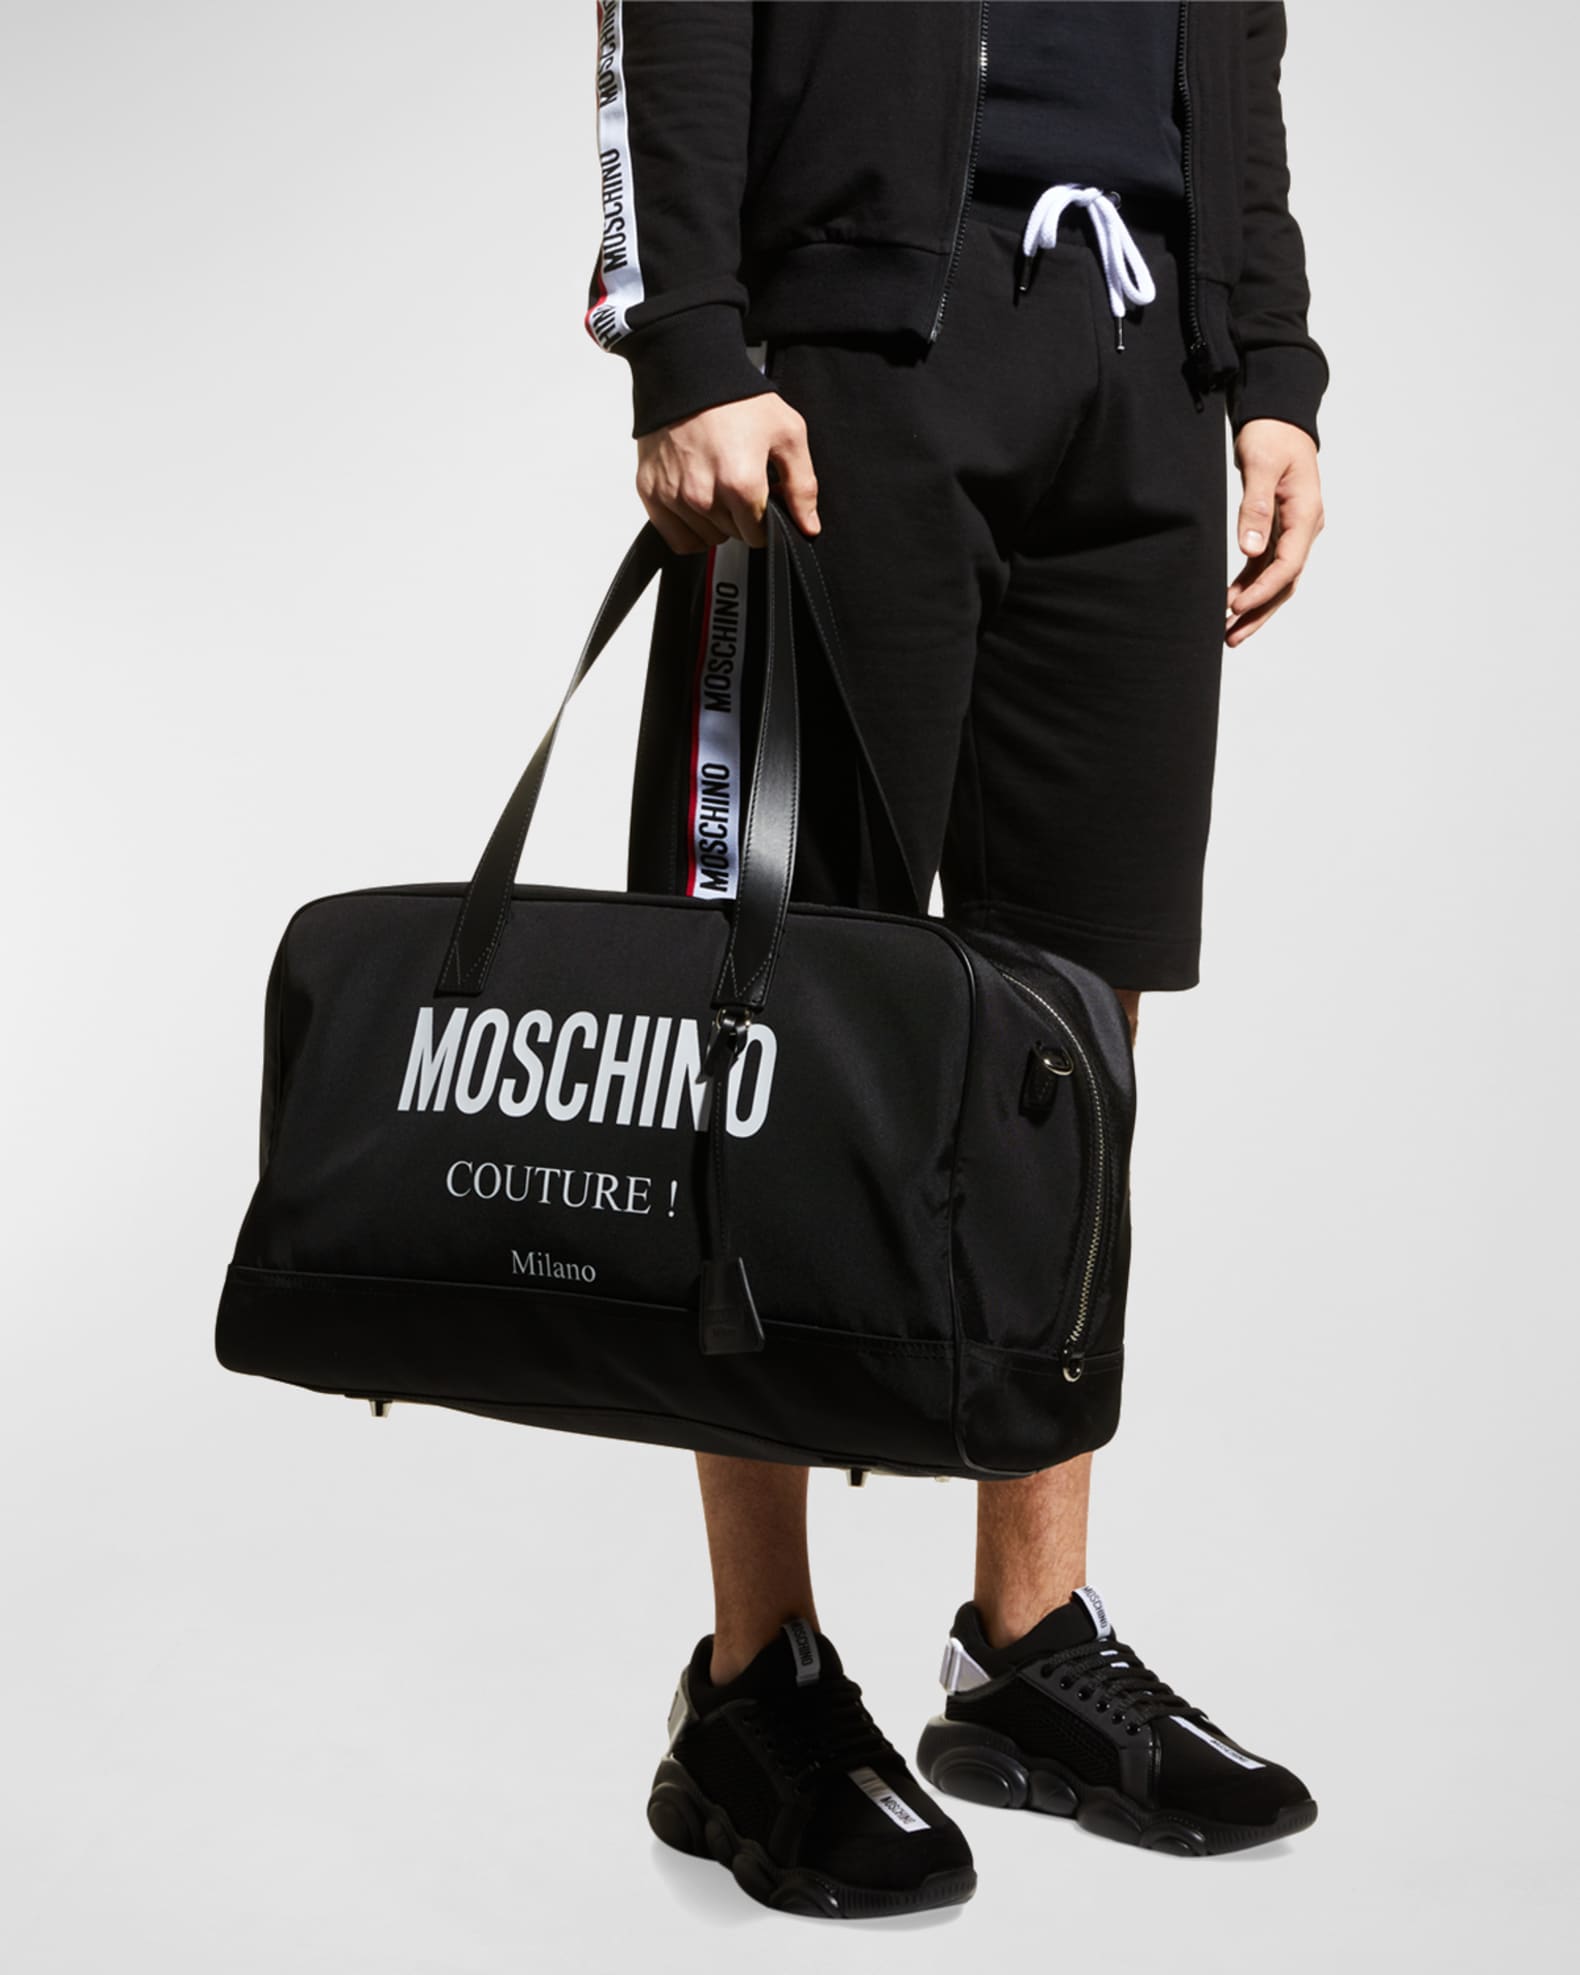 Moschino Men's Logo Duffle Bag | Neiman Marcus